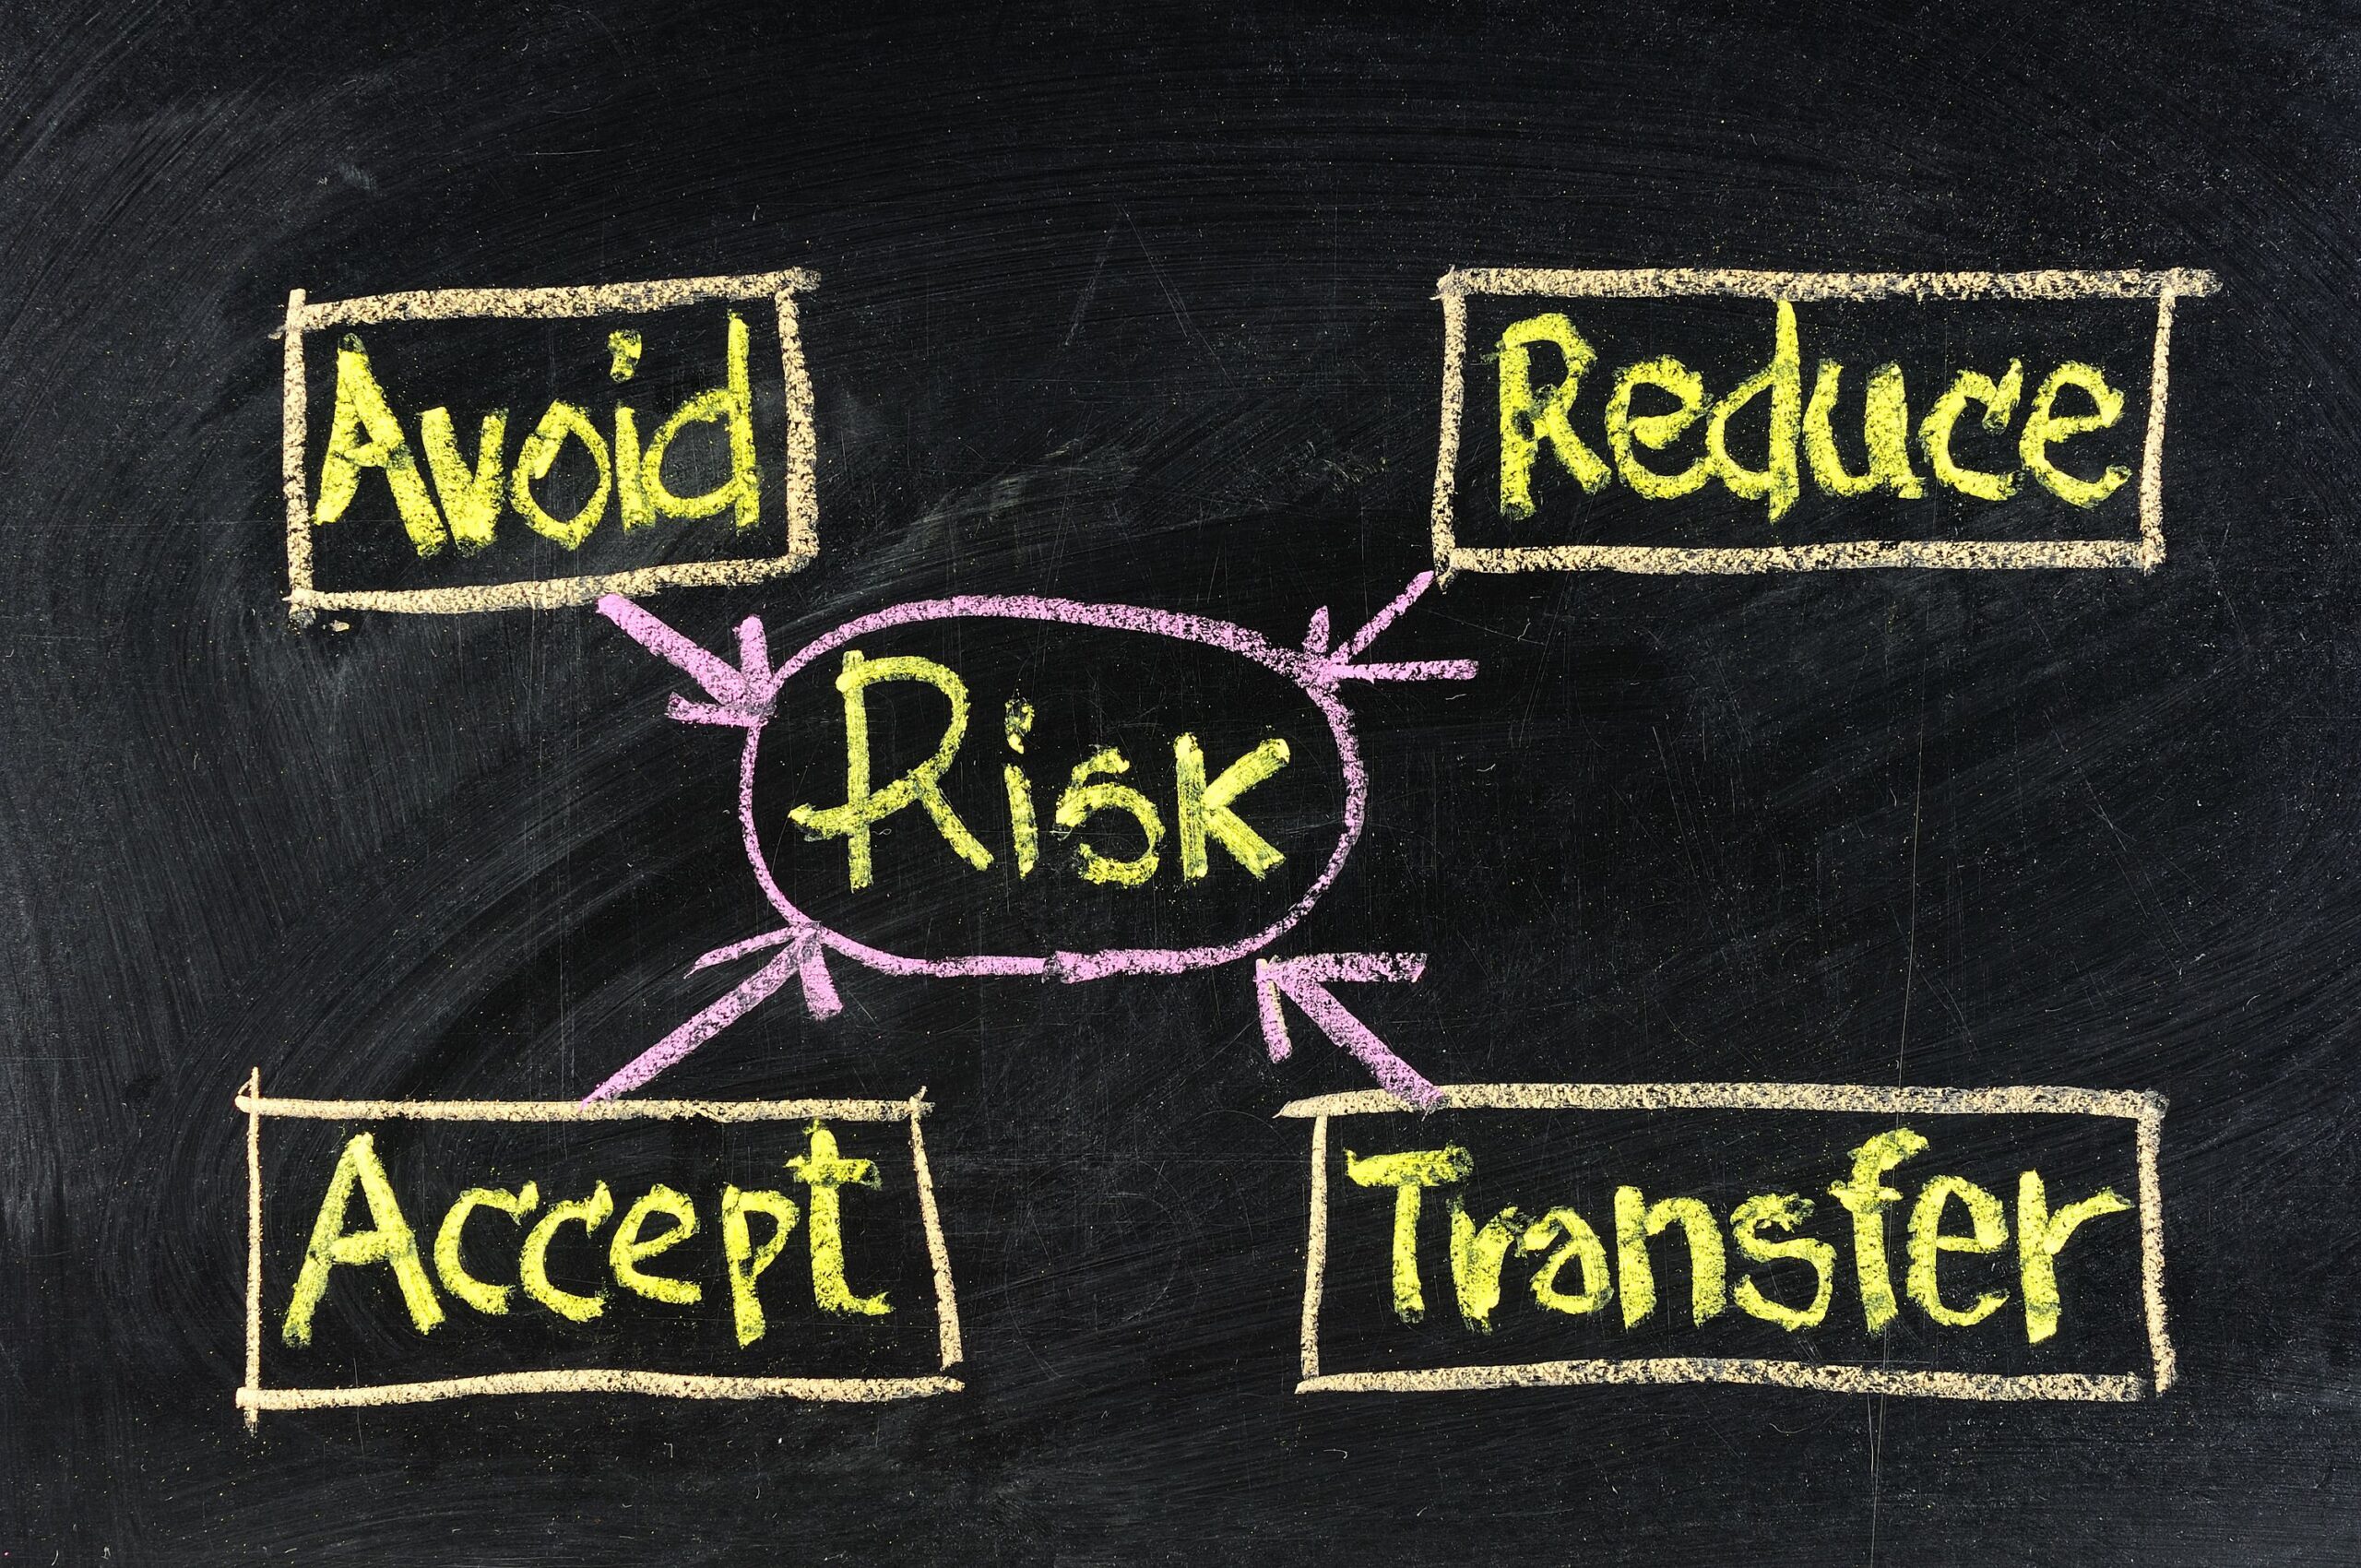 How Do Organizations Assess Business Risk